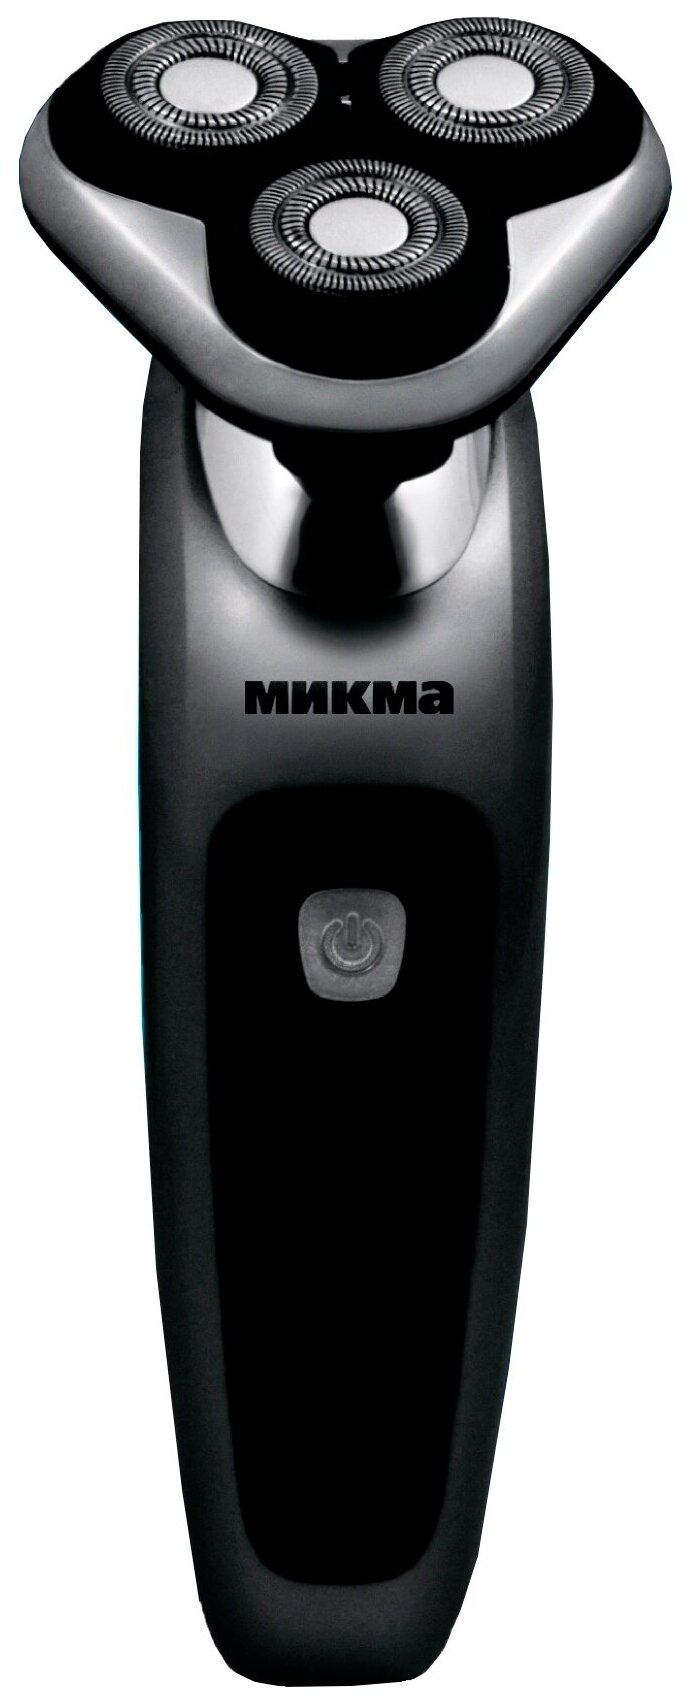 Микма Электробритва "Микма" 357 Р, 3.5 Вт, роторная, сухое бритьё, акб/220 В, чёрная